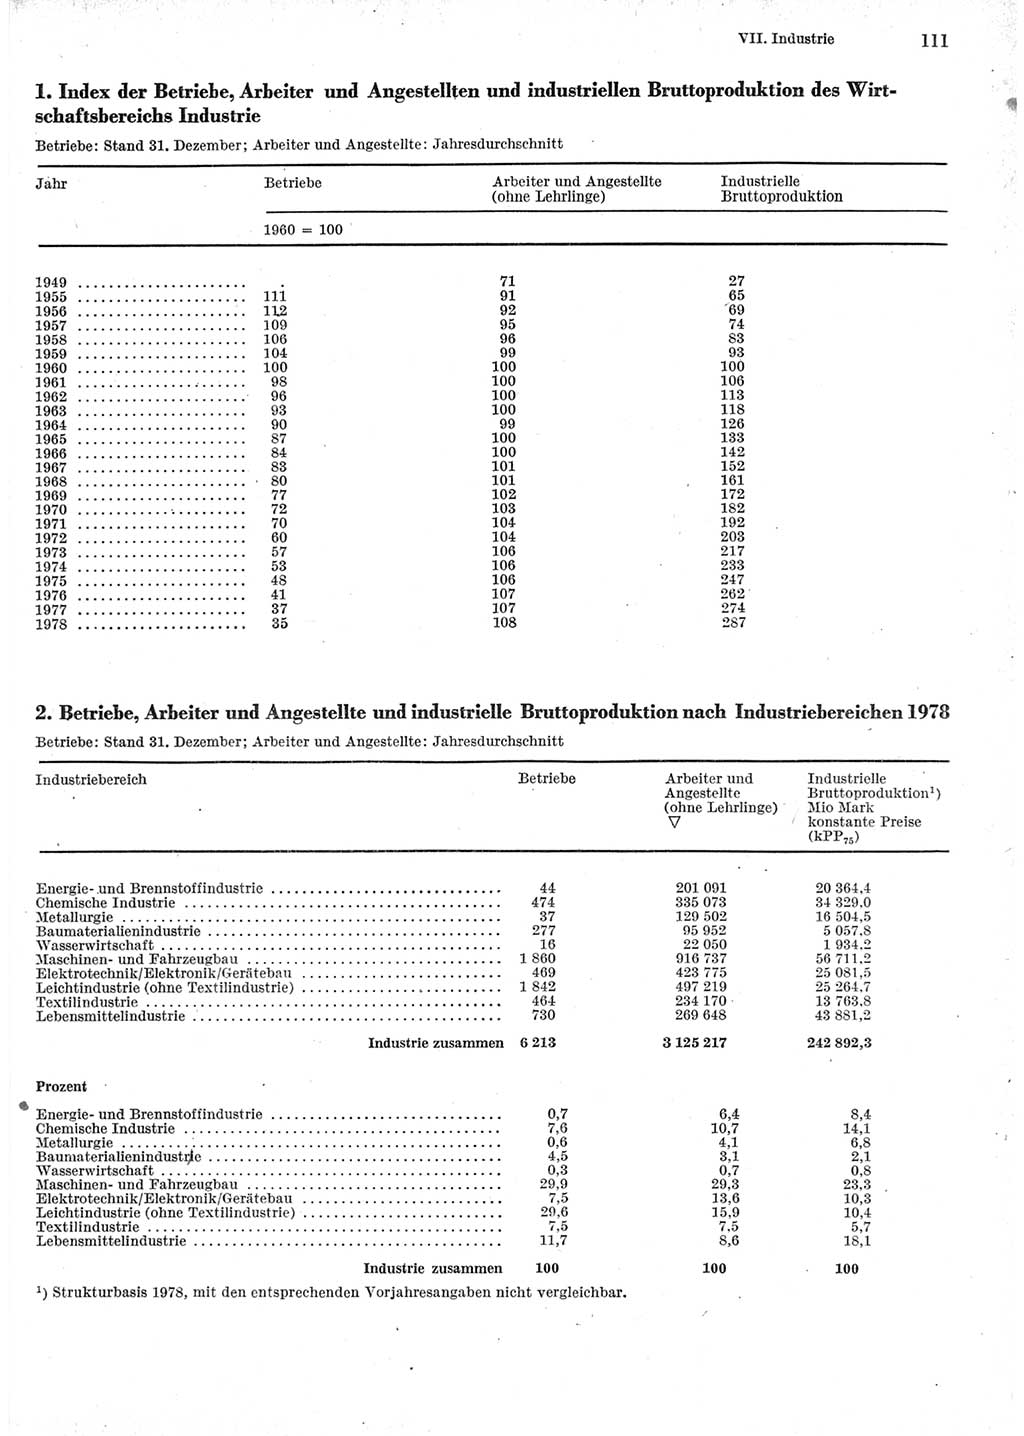 Statistisches Jahrbuch der Deutschen Demokratischen Republik (DDR) 1979, Seite 111 (Stat. Jb. DDR 1979, S. 111)